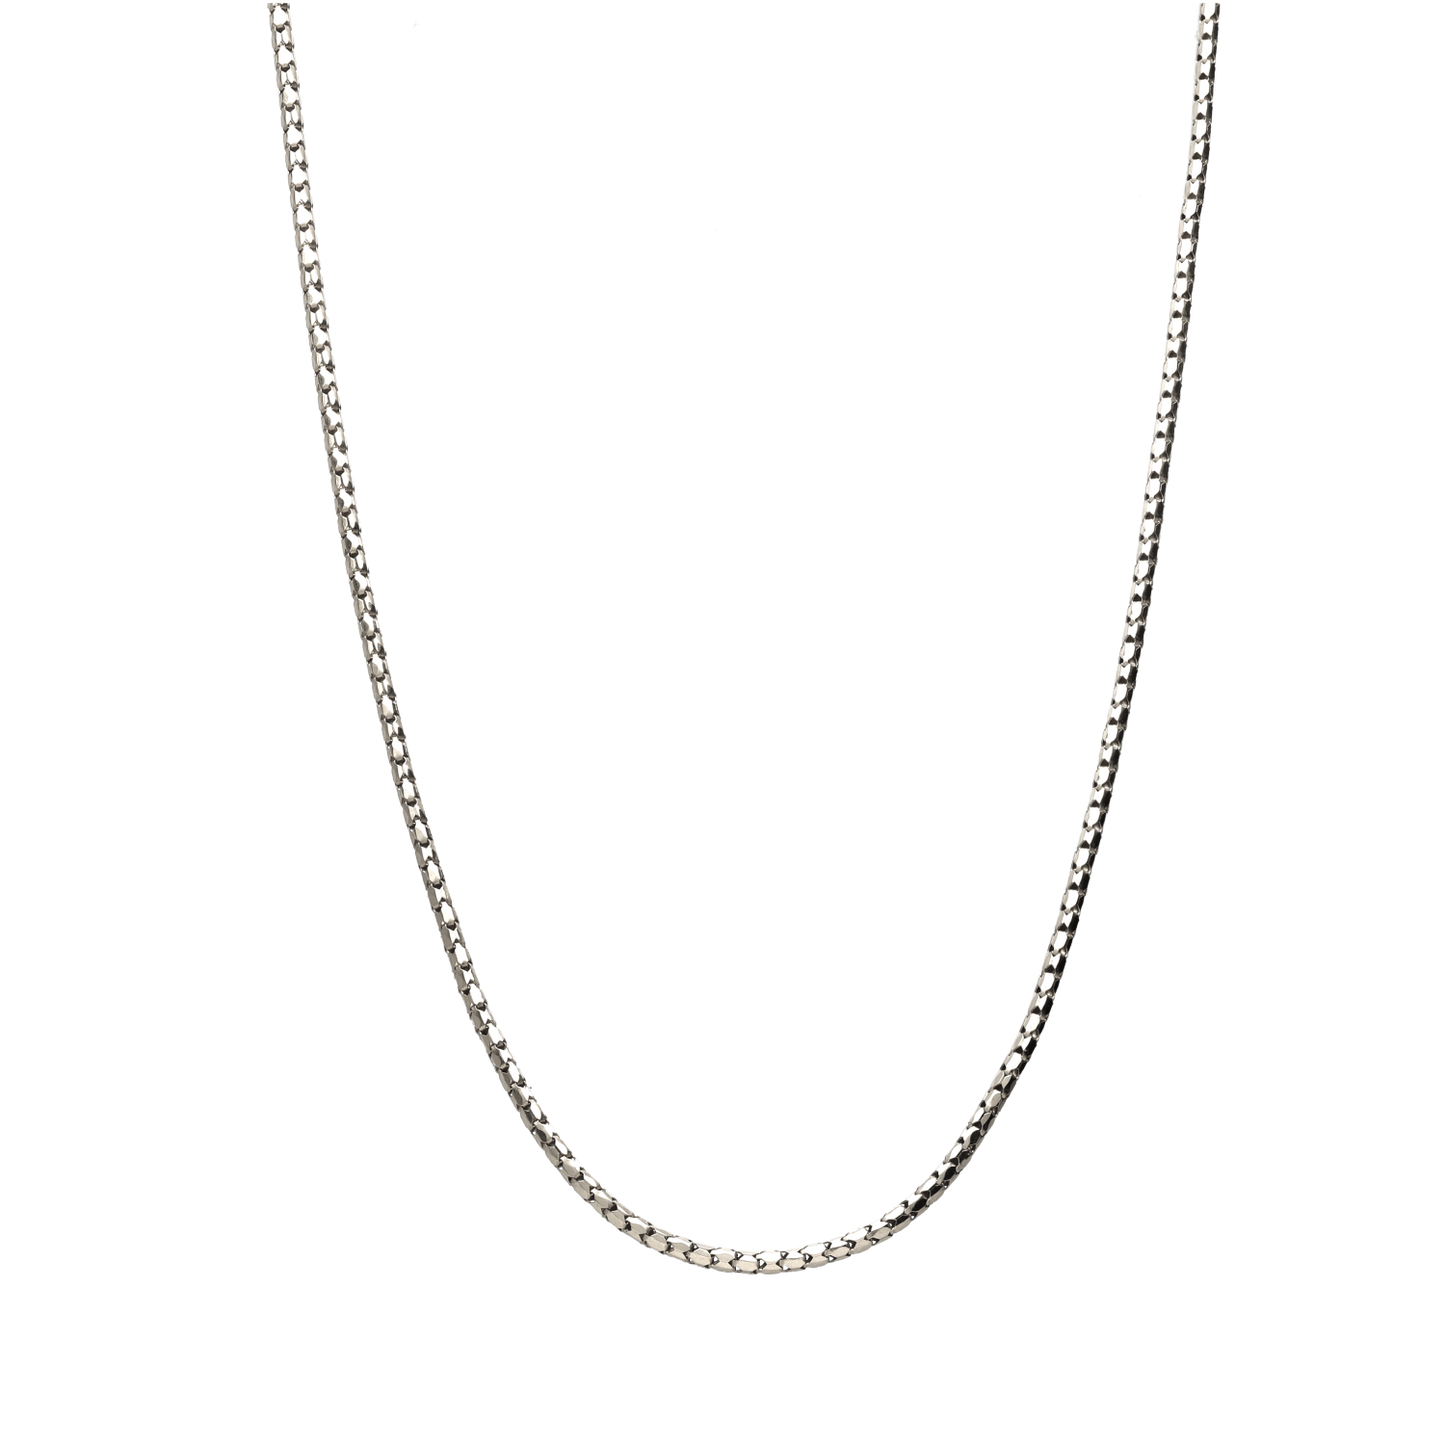 Load image into Gallery viewer, La cadena plata Snake pequeño está disponible en 40 centímetros y cuenta con cierre de mosquetón, la cadena de cordón  está fabricada en Plata de Ley 925.
